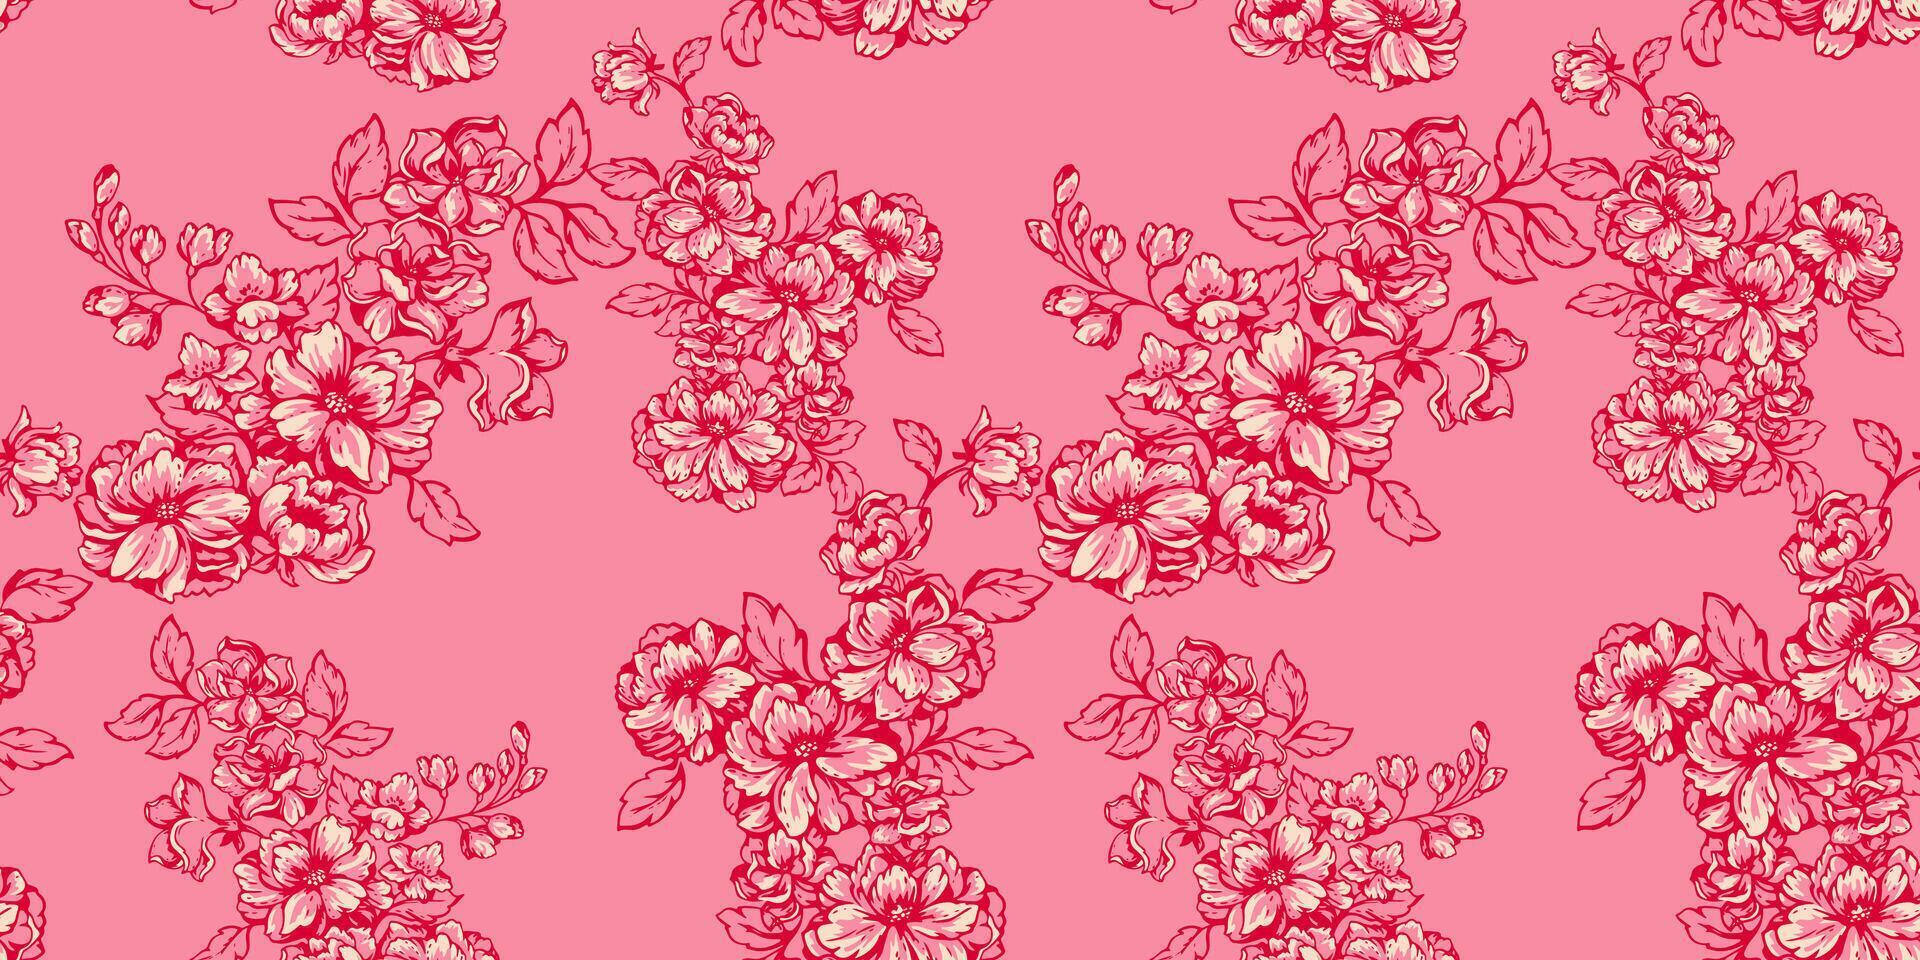 artístico, resumen ramas con flores, brotes, hojas sin costura modelo. estilizado sencillo floral tapiz en un rosado antecedentes. vector mano dibujado líneas contorno de flor impresión. modelo para diseño